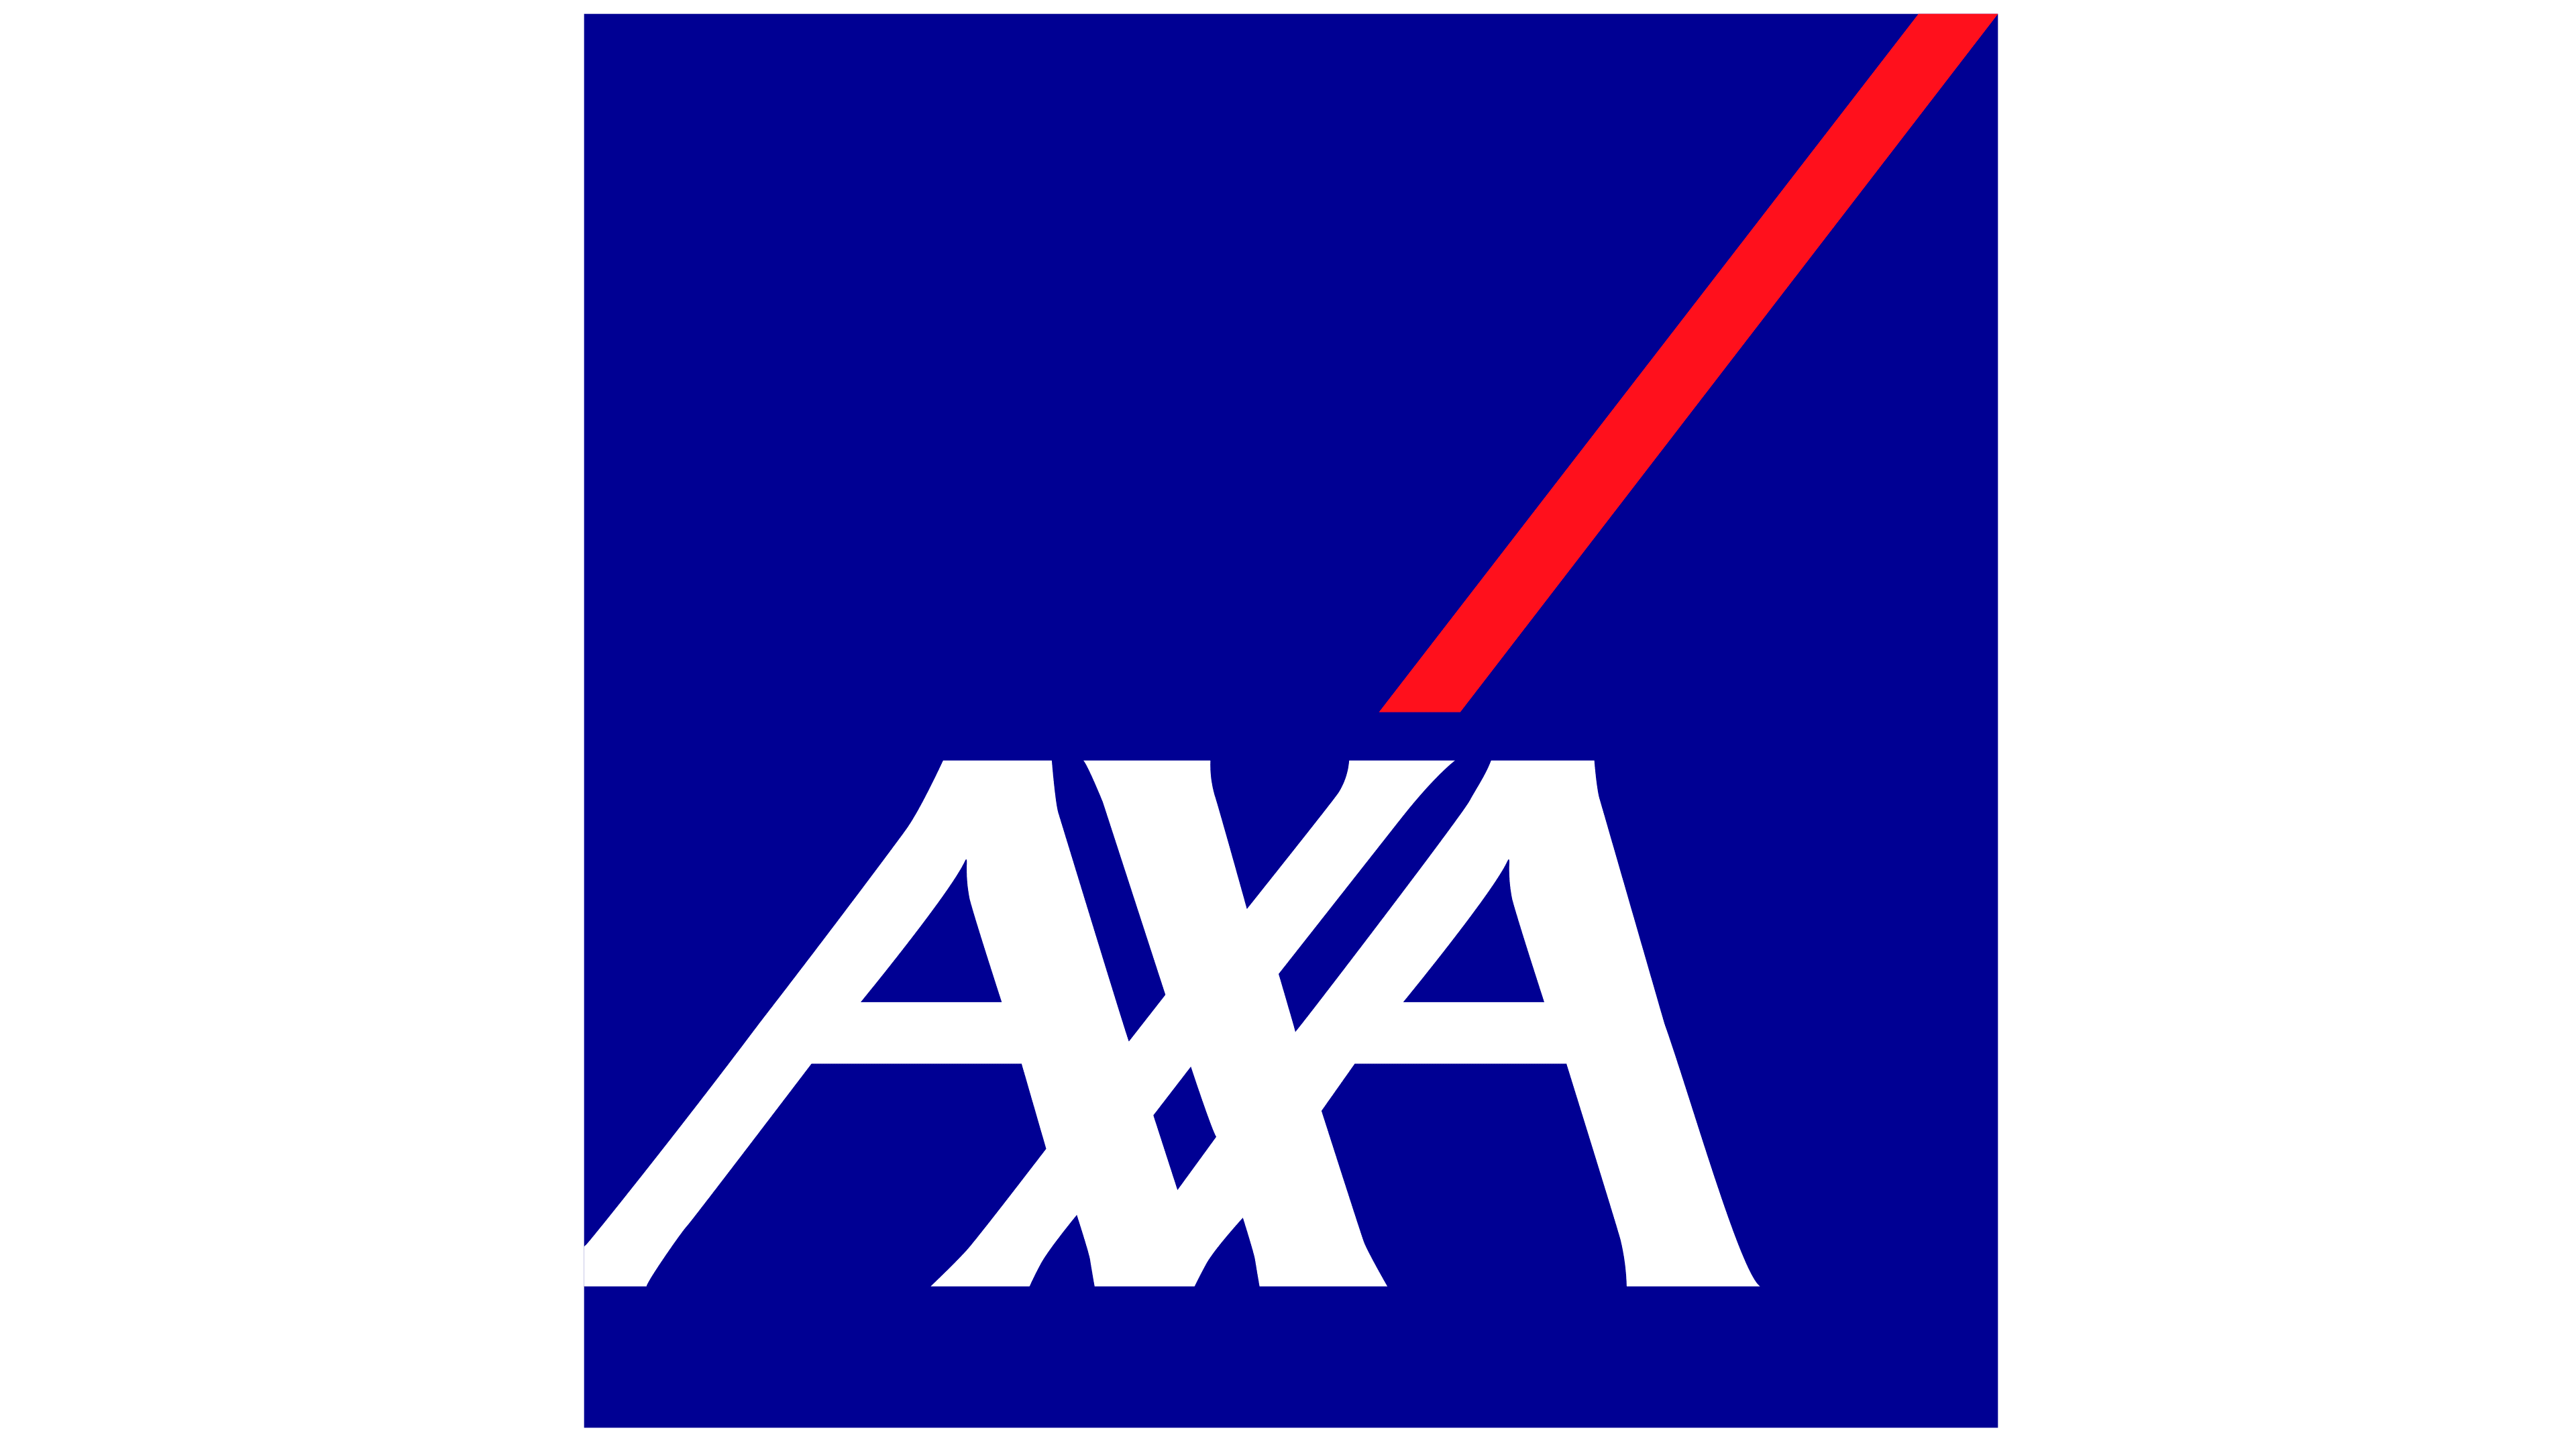 AXA Logo - Open GI Partner Network